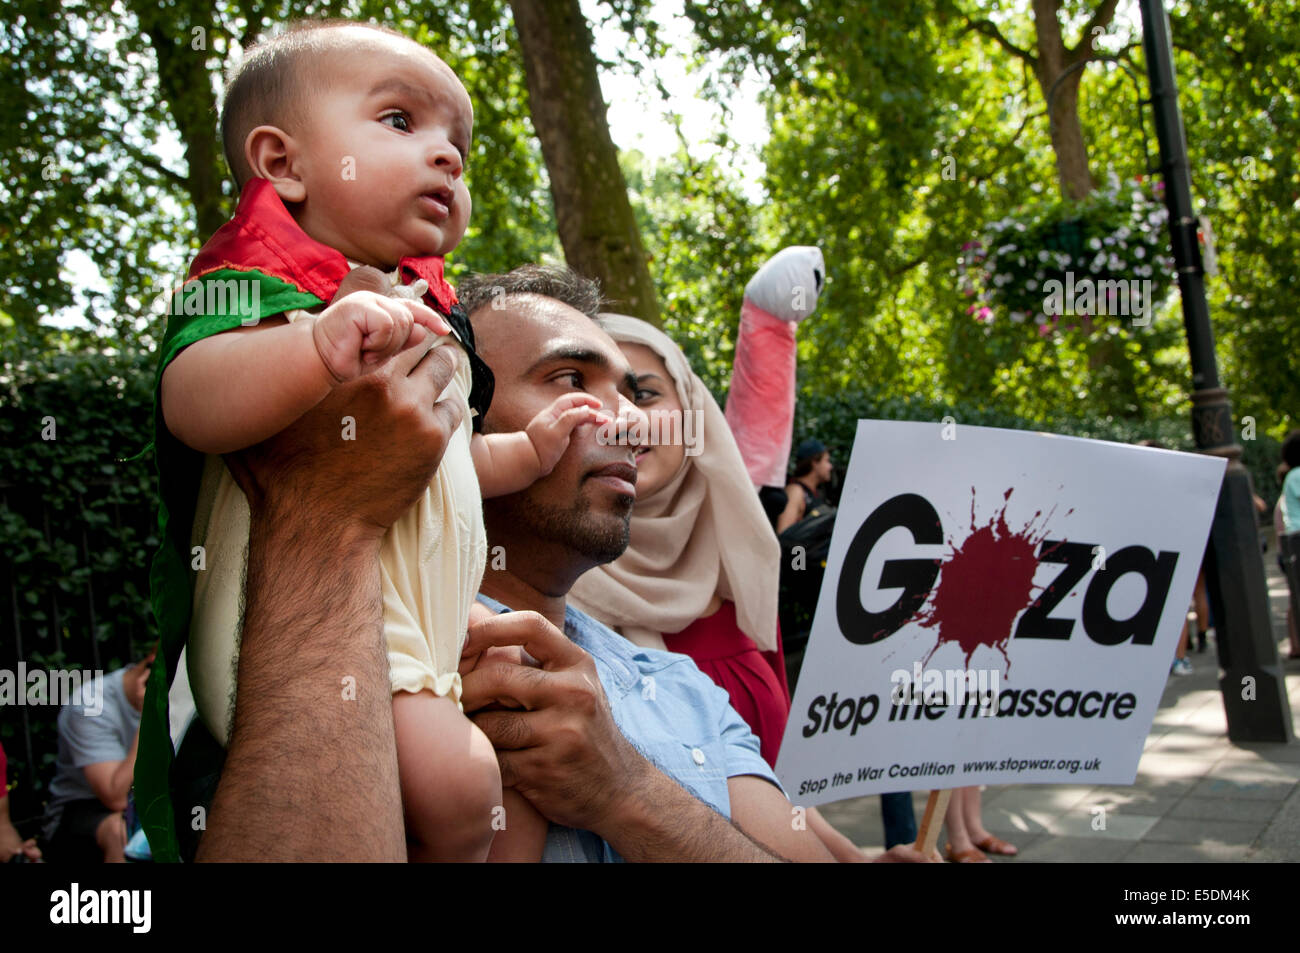 La dimostrazione contro il bombardamento israeliano della Striscia di Gaza, 26.07.2014. Bambino avvolto nella Bandiera palestinese e detenute da suo padre Foto Stock